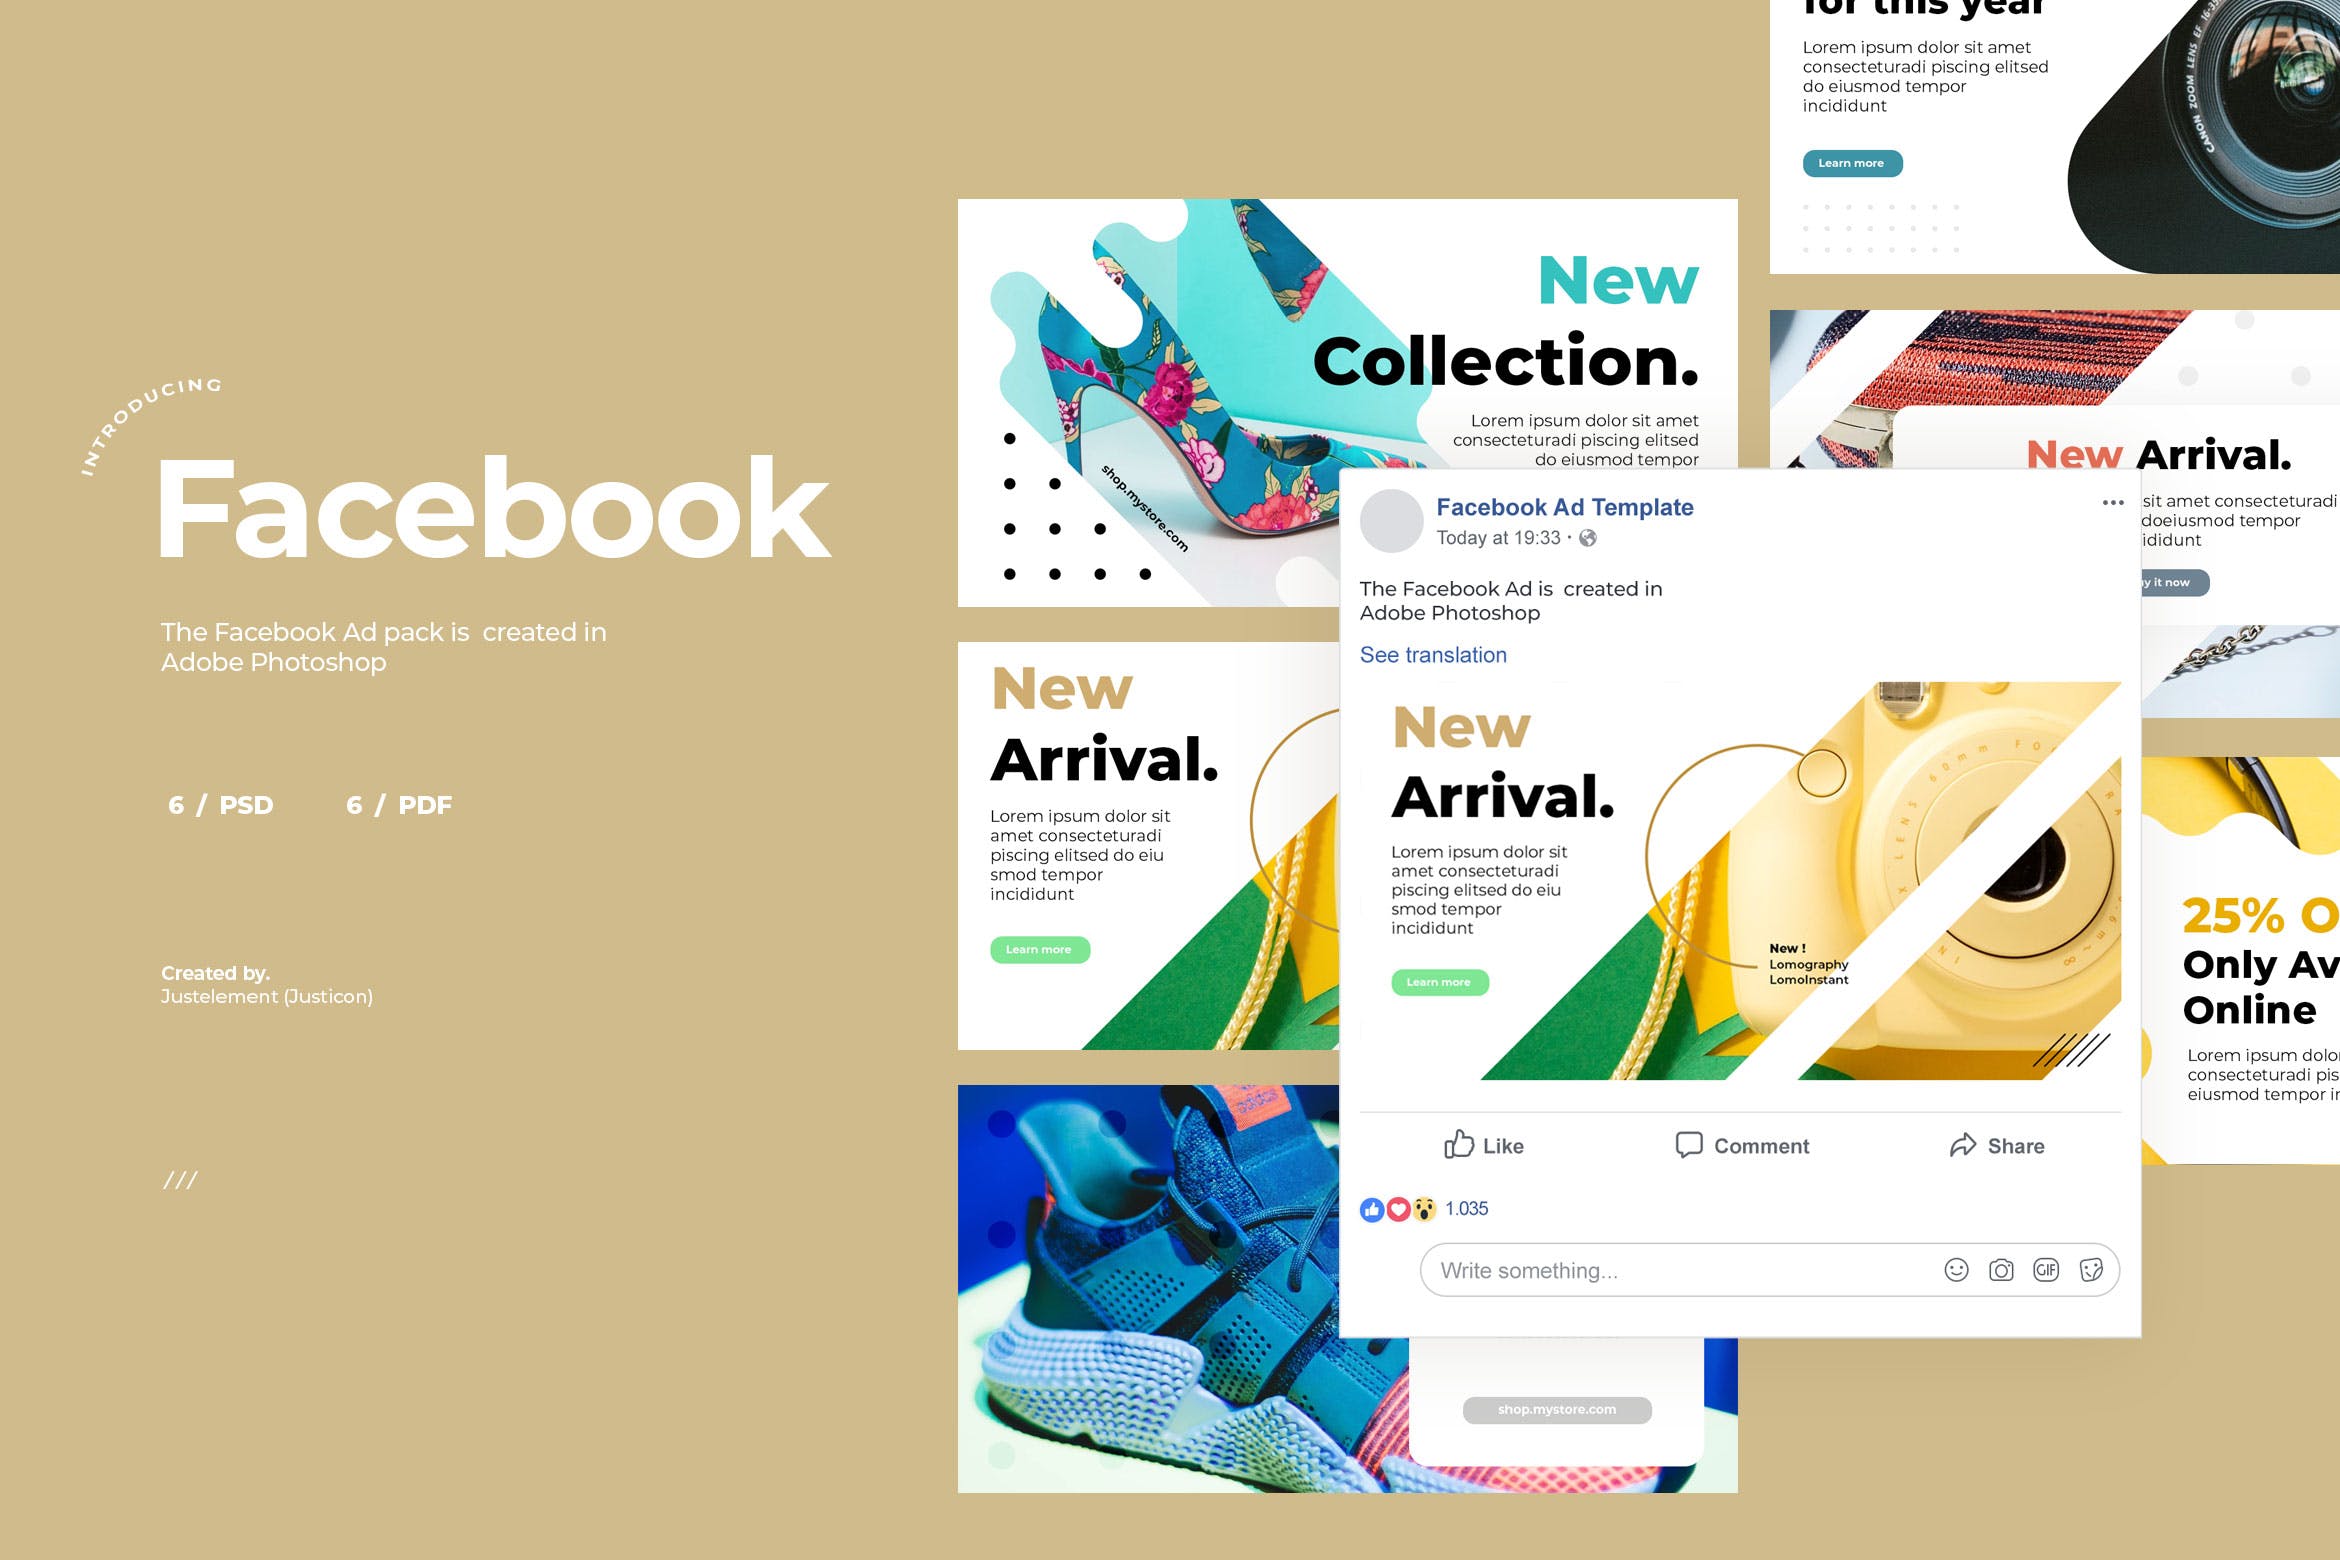 新品发布Facebook社交推广广告设计模板素材库精选v5 Facebook Ad Template Vol.5插图